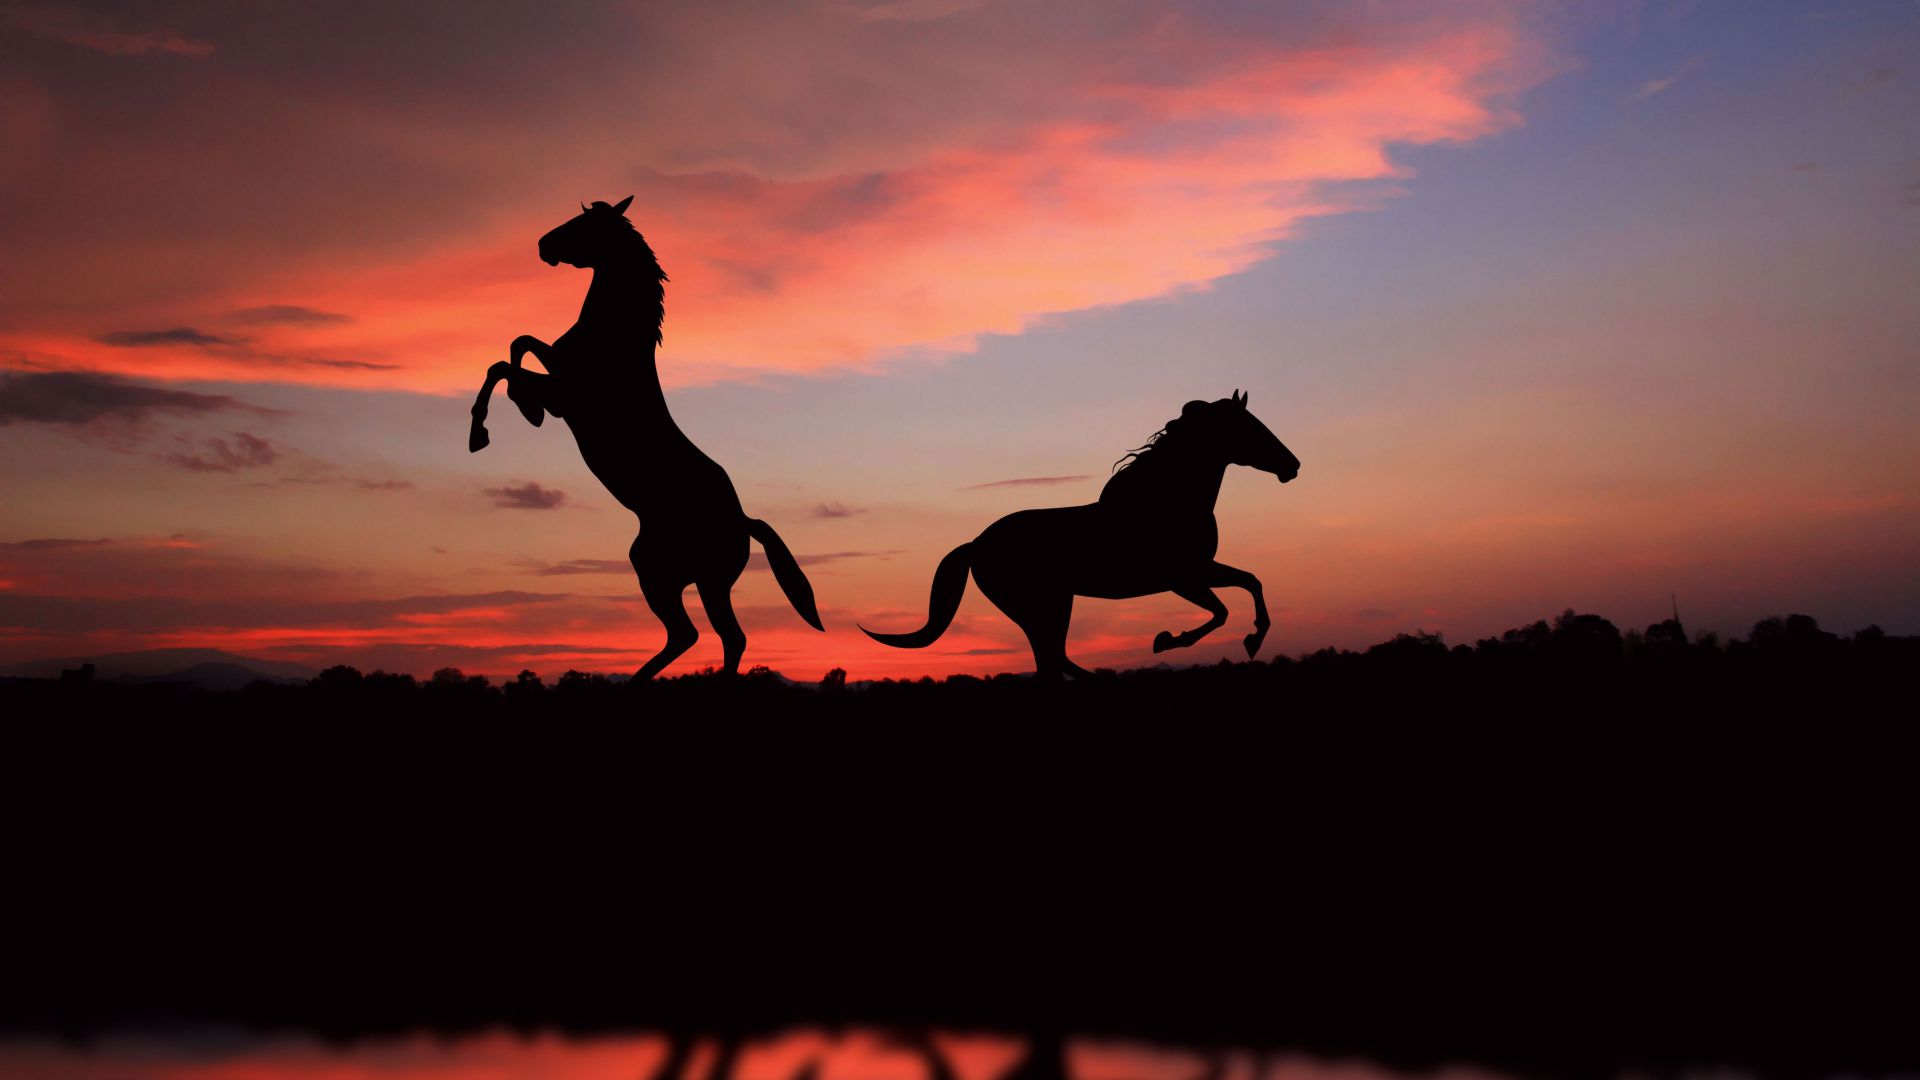 Horse, night, sunset, cute animals (horizontal)